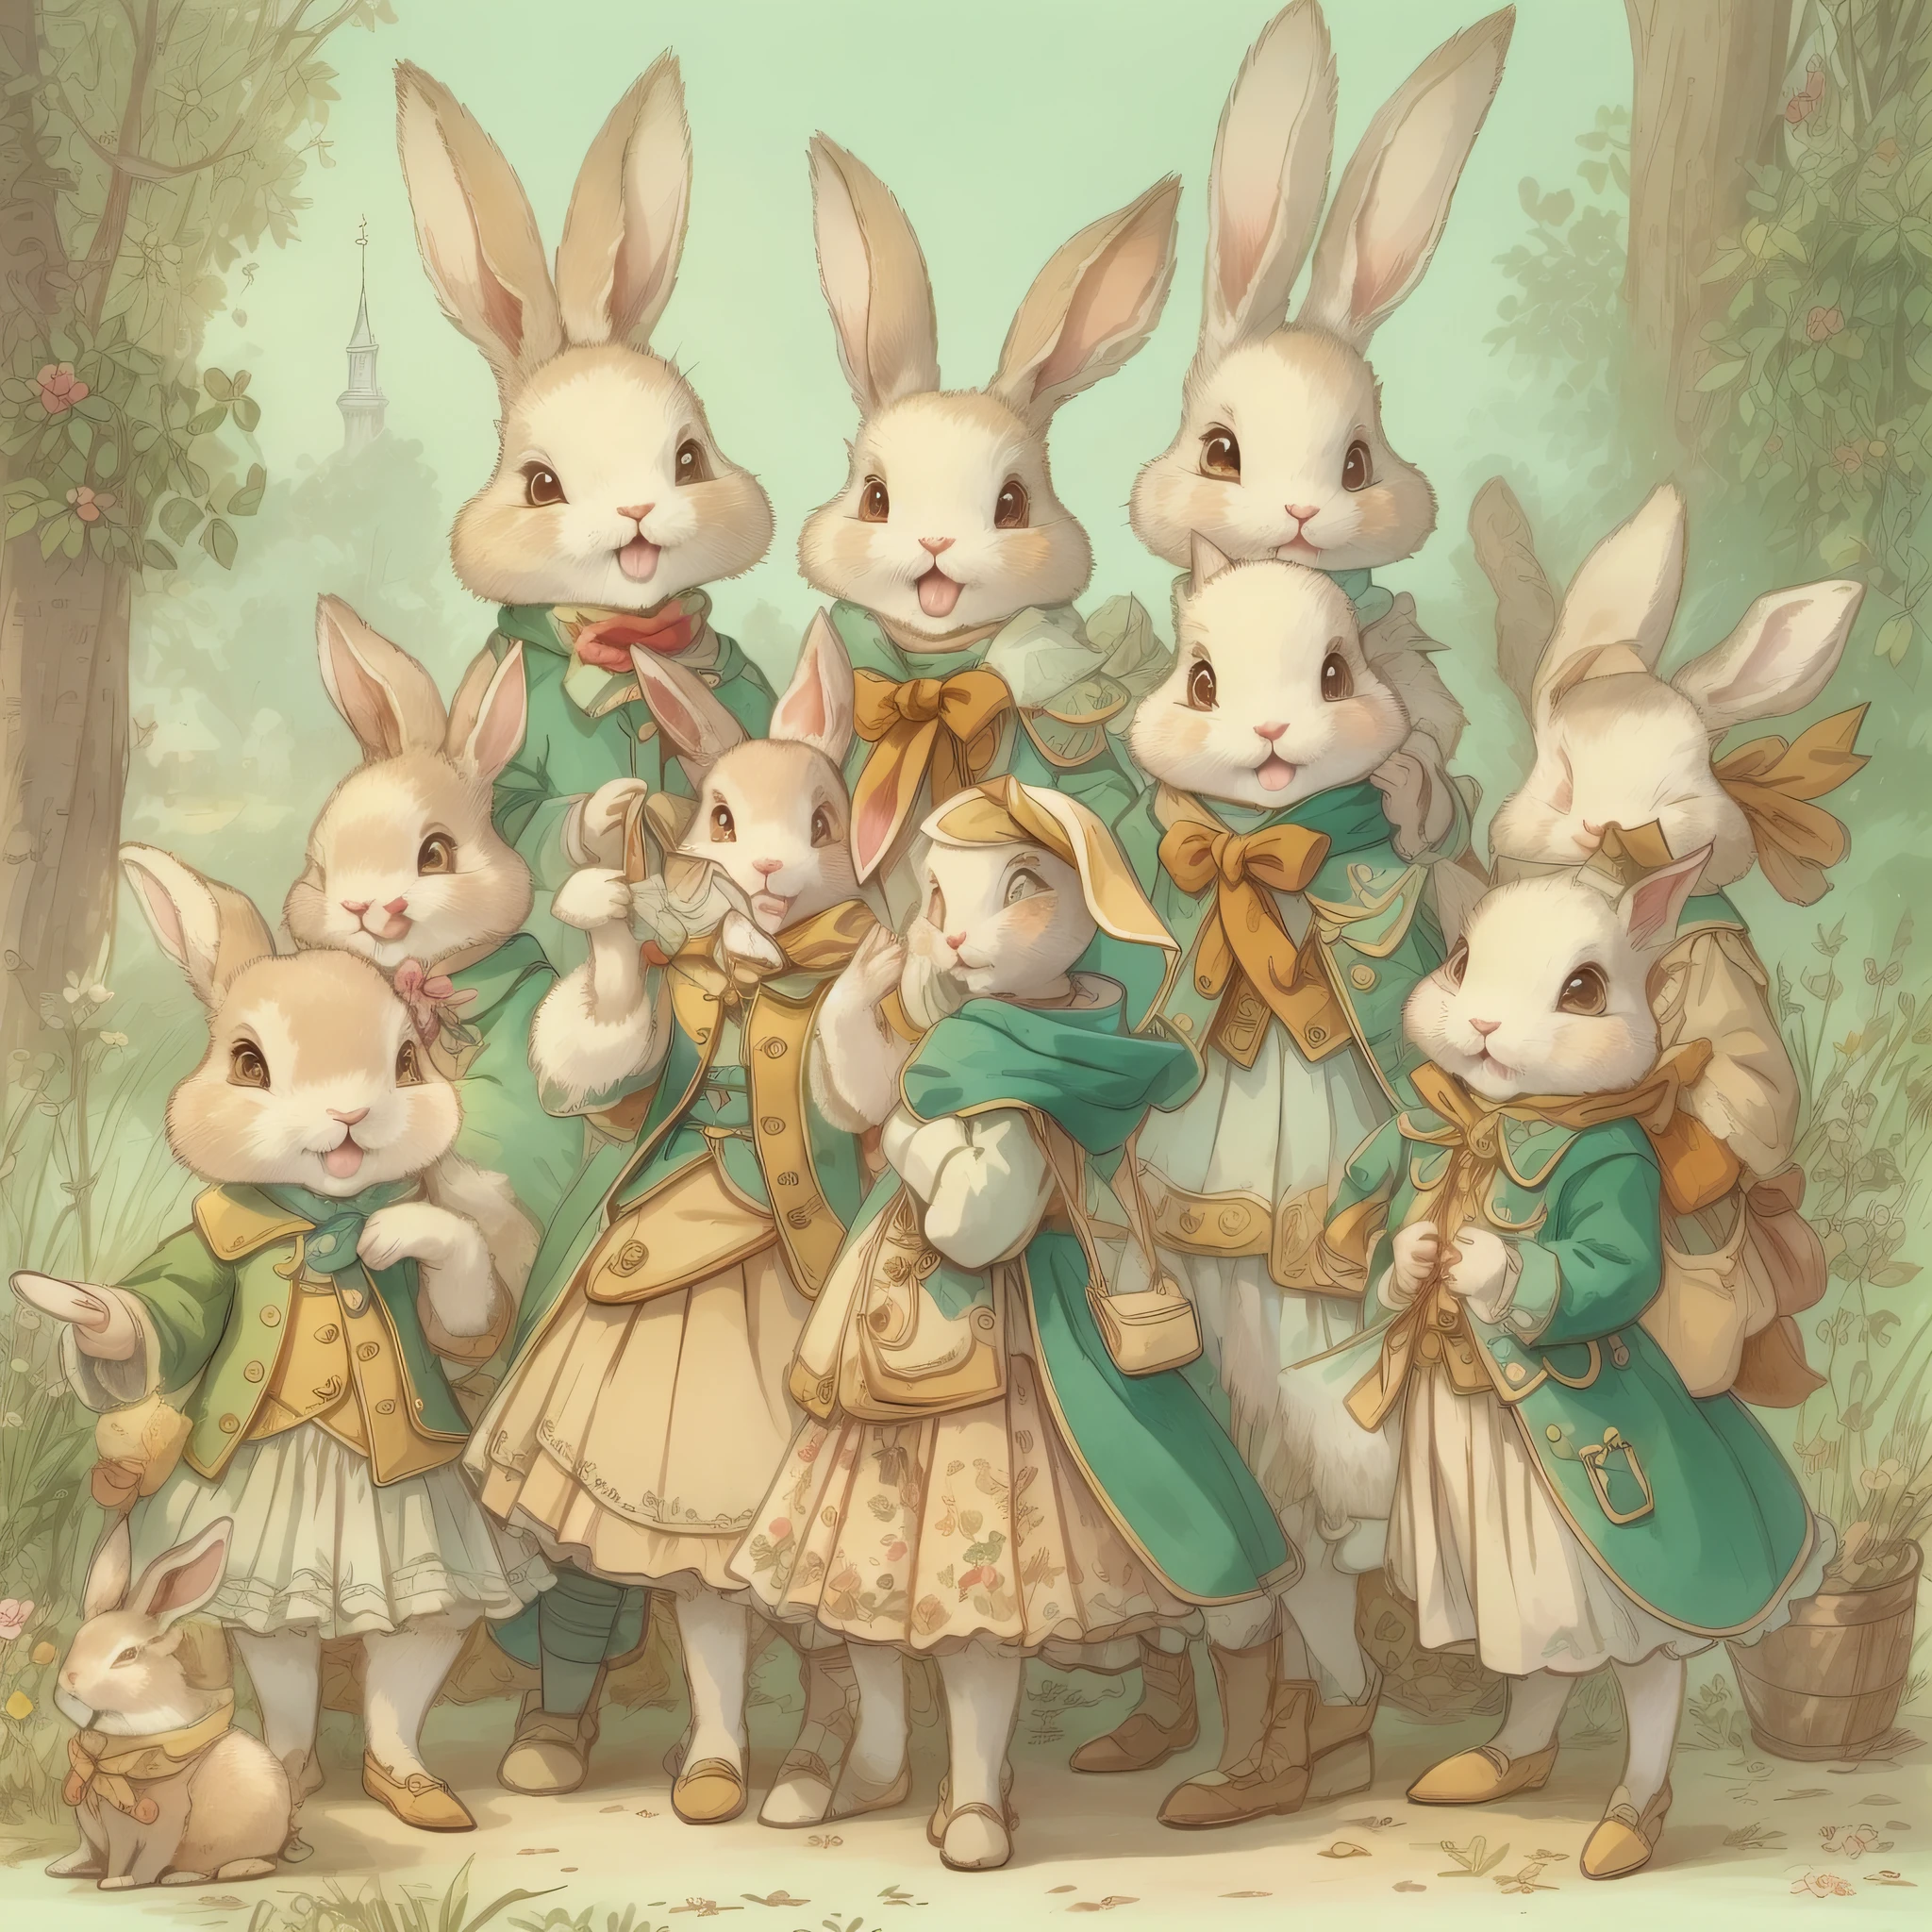 超高画質、非常に繊細、キャラクターデザイン画、全身のような、複数のポーズ、多様な表情、擬人化されたかわいいウサギ、おとぎ話のかわいいキャラクター、コートを着たかわいいウサギ、18世紀フランスの衣服、カラフルな色彩、